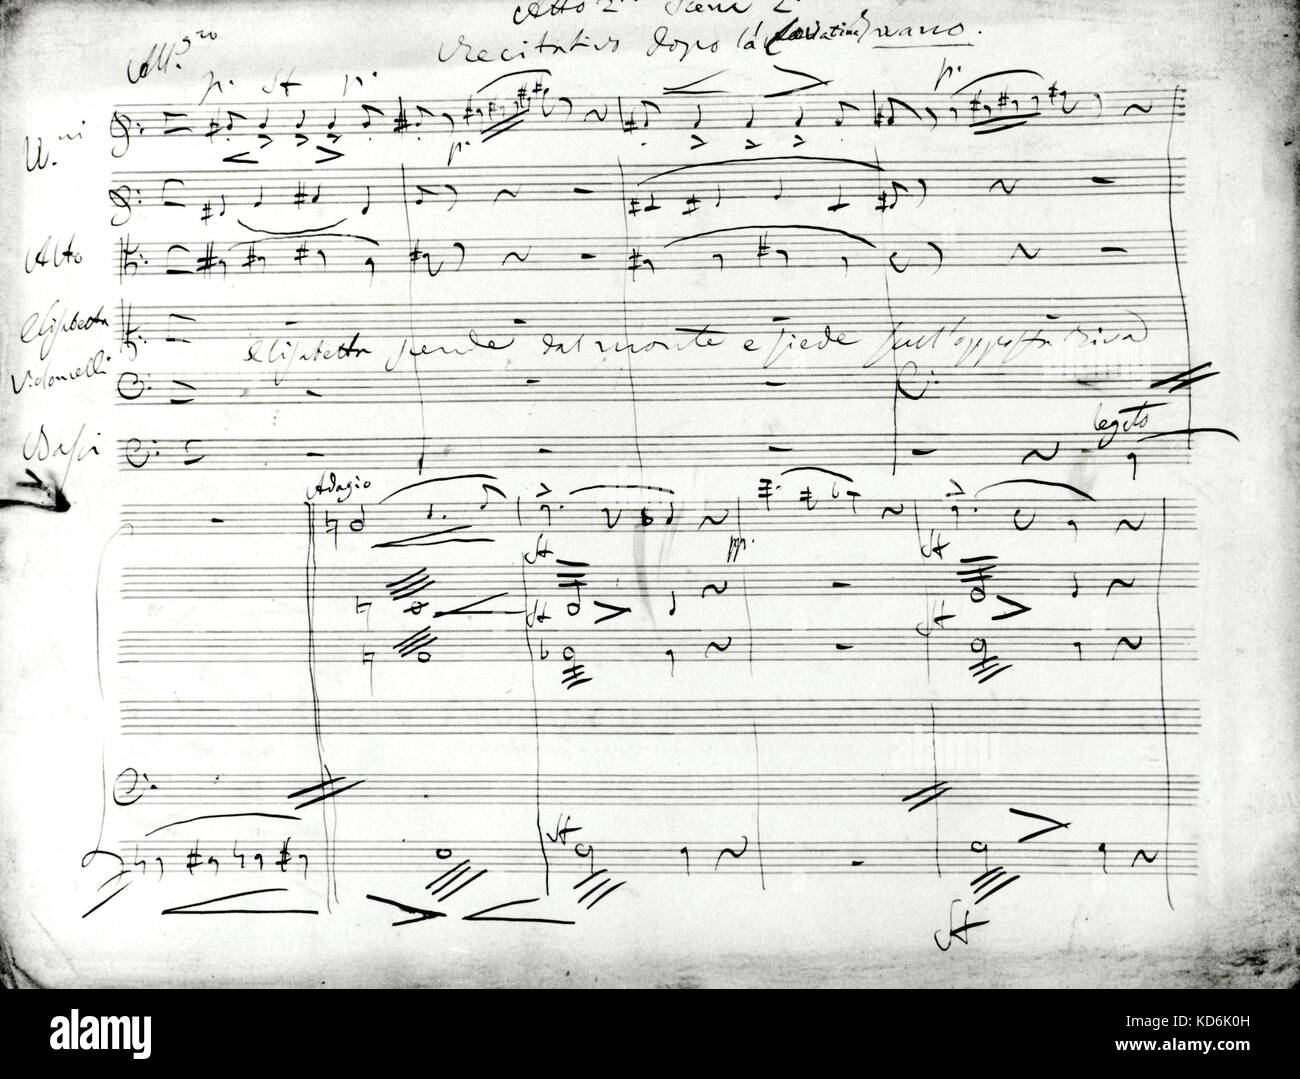 La mano de Donizetti partitura para su ópera 'Elisabetta", acto II, escena II. Foto de stock